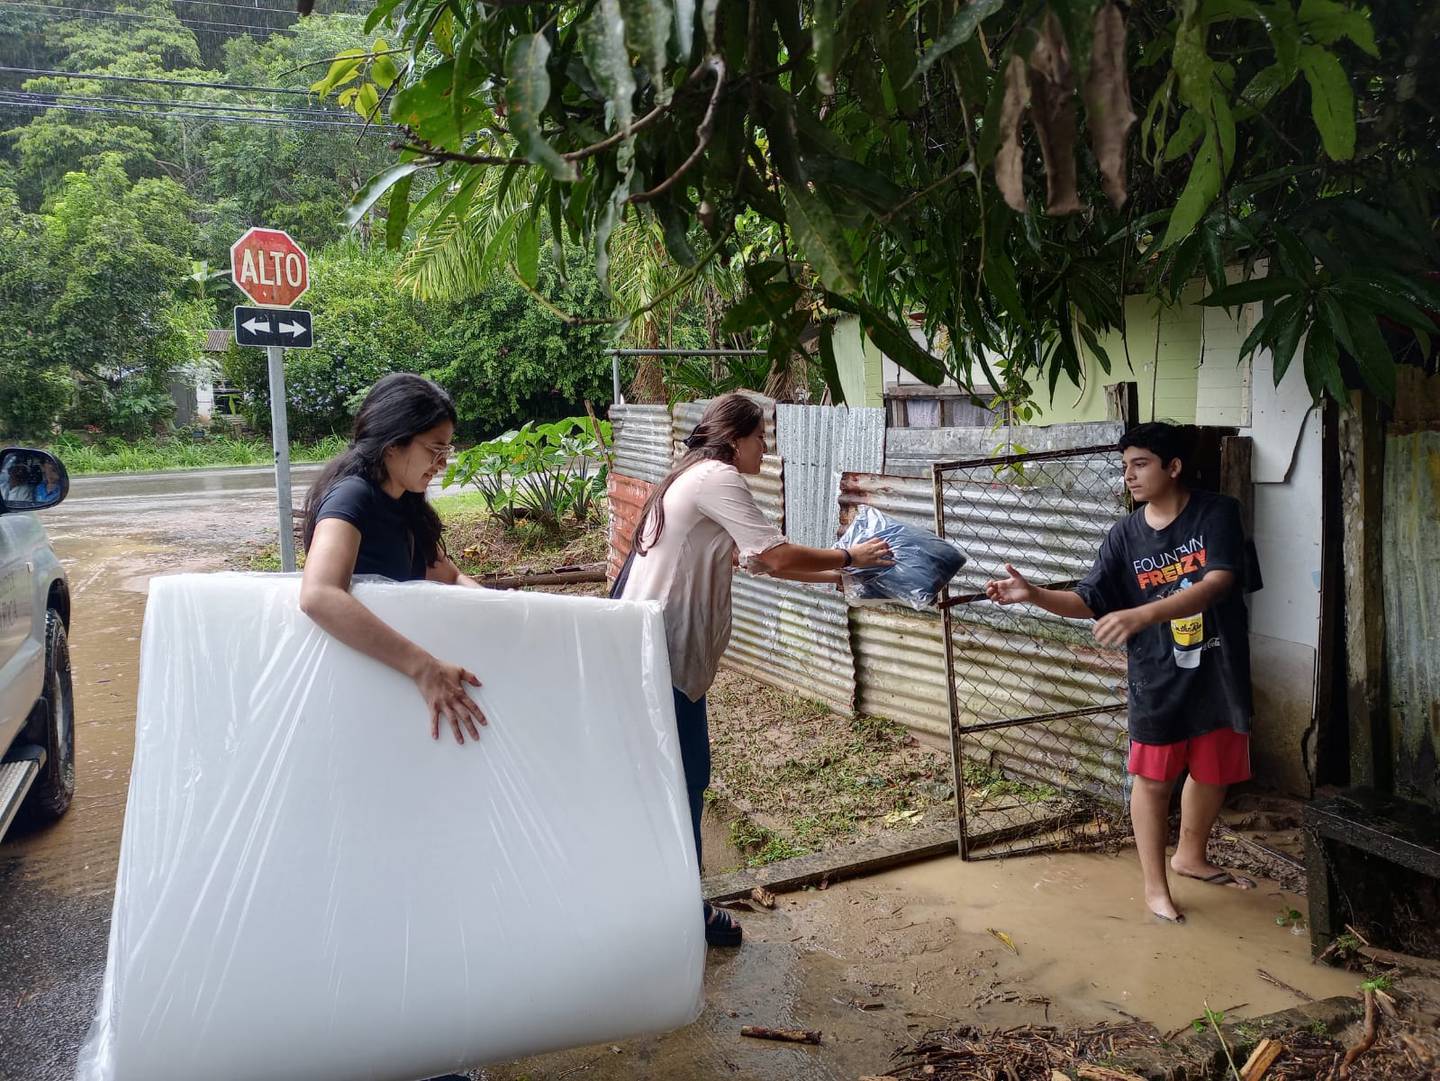 Más de 30 familias resultaron afectadas por las inundaciones que provocó el desbordamiento de los ríos y colapso de alcantarillas en la zona sur del país.